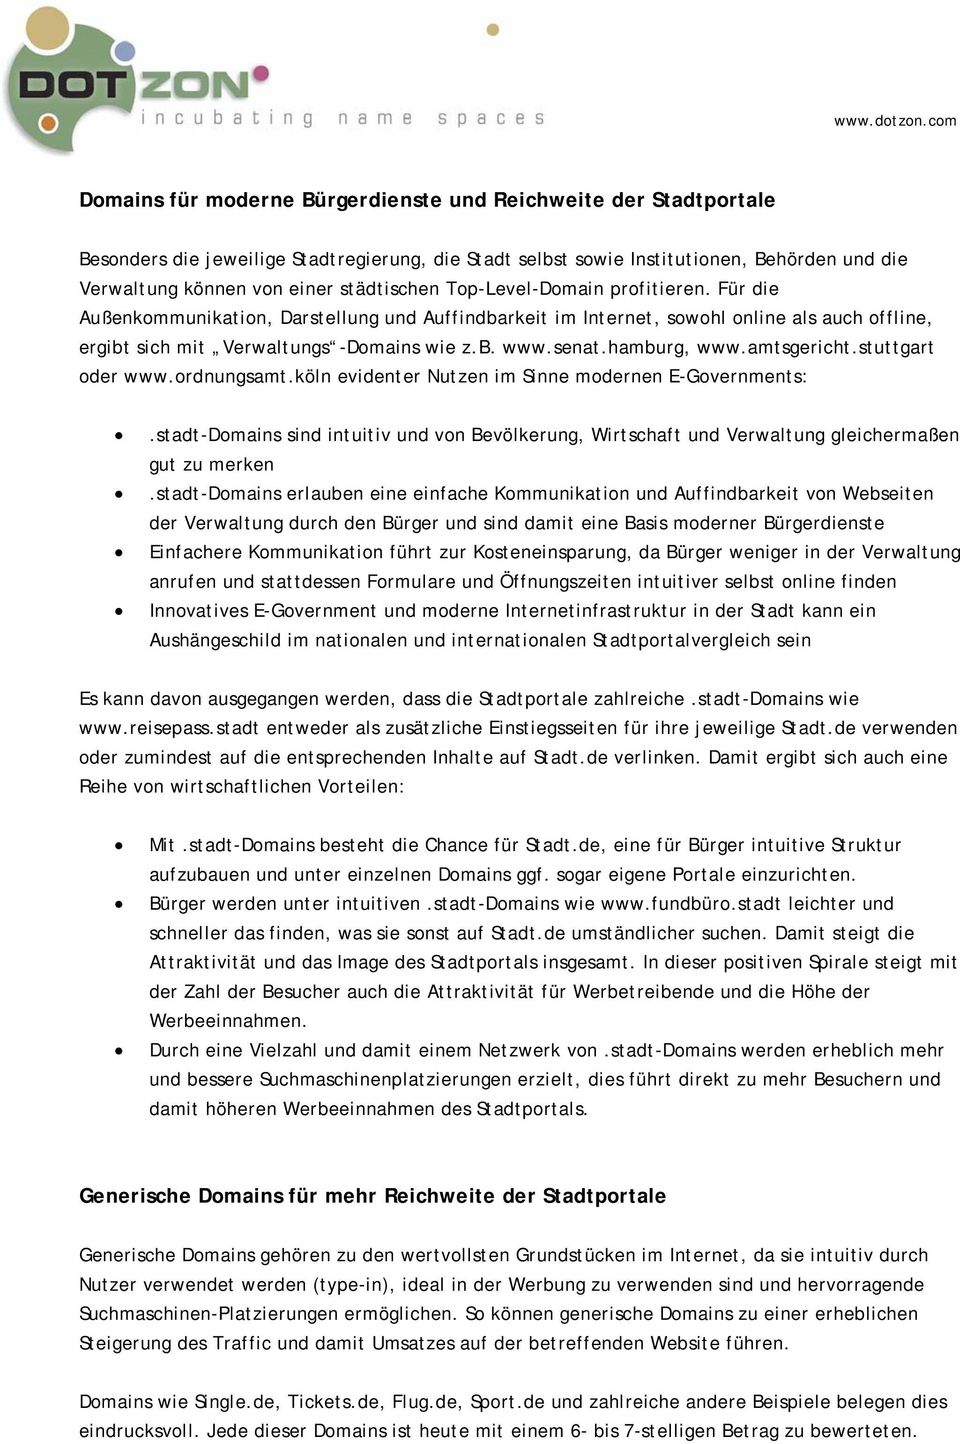 senat.hamburg, www.amtsgericht.stuttgart oder www.ordnungsamt.köln evidenter Nutzen im Sinne modernen E-Governments:.